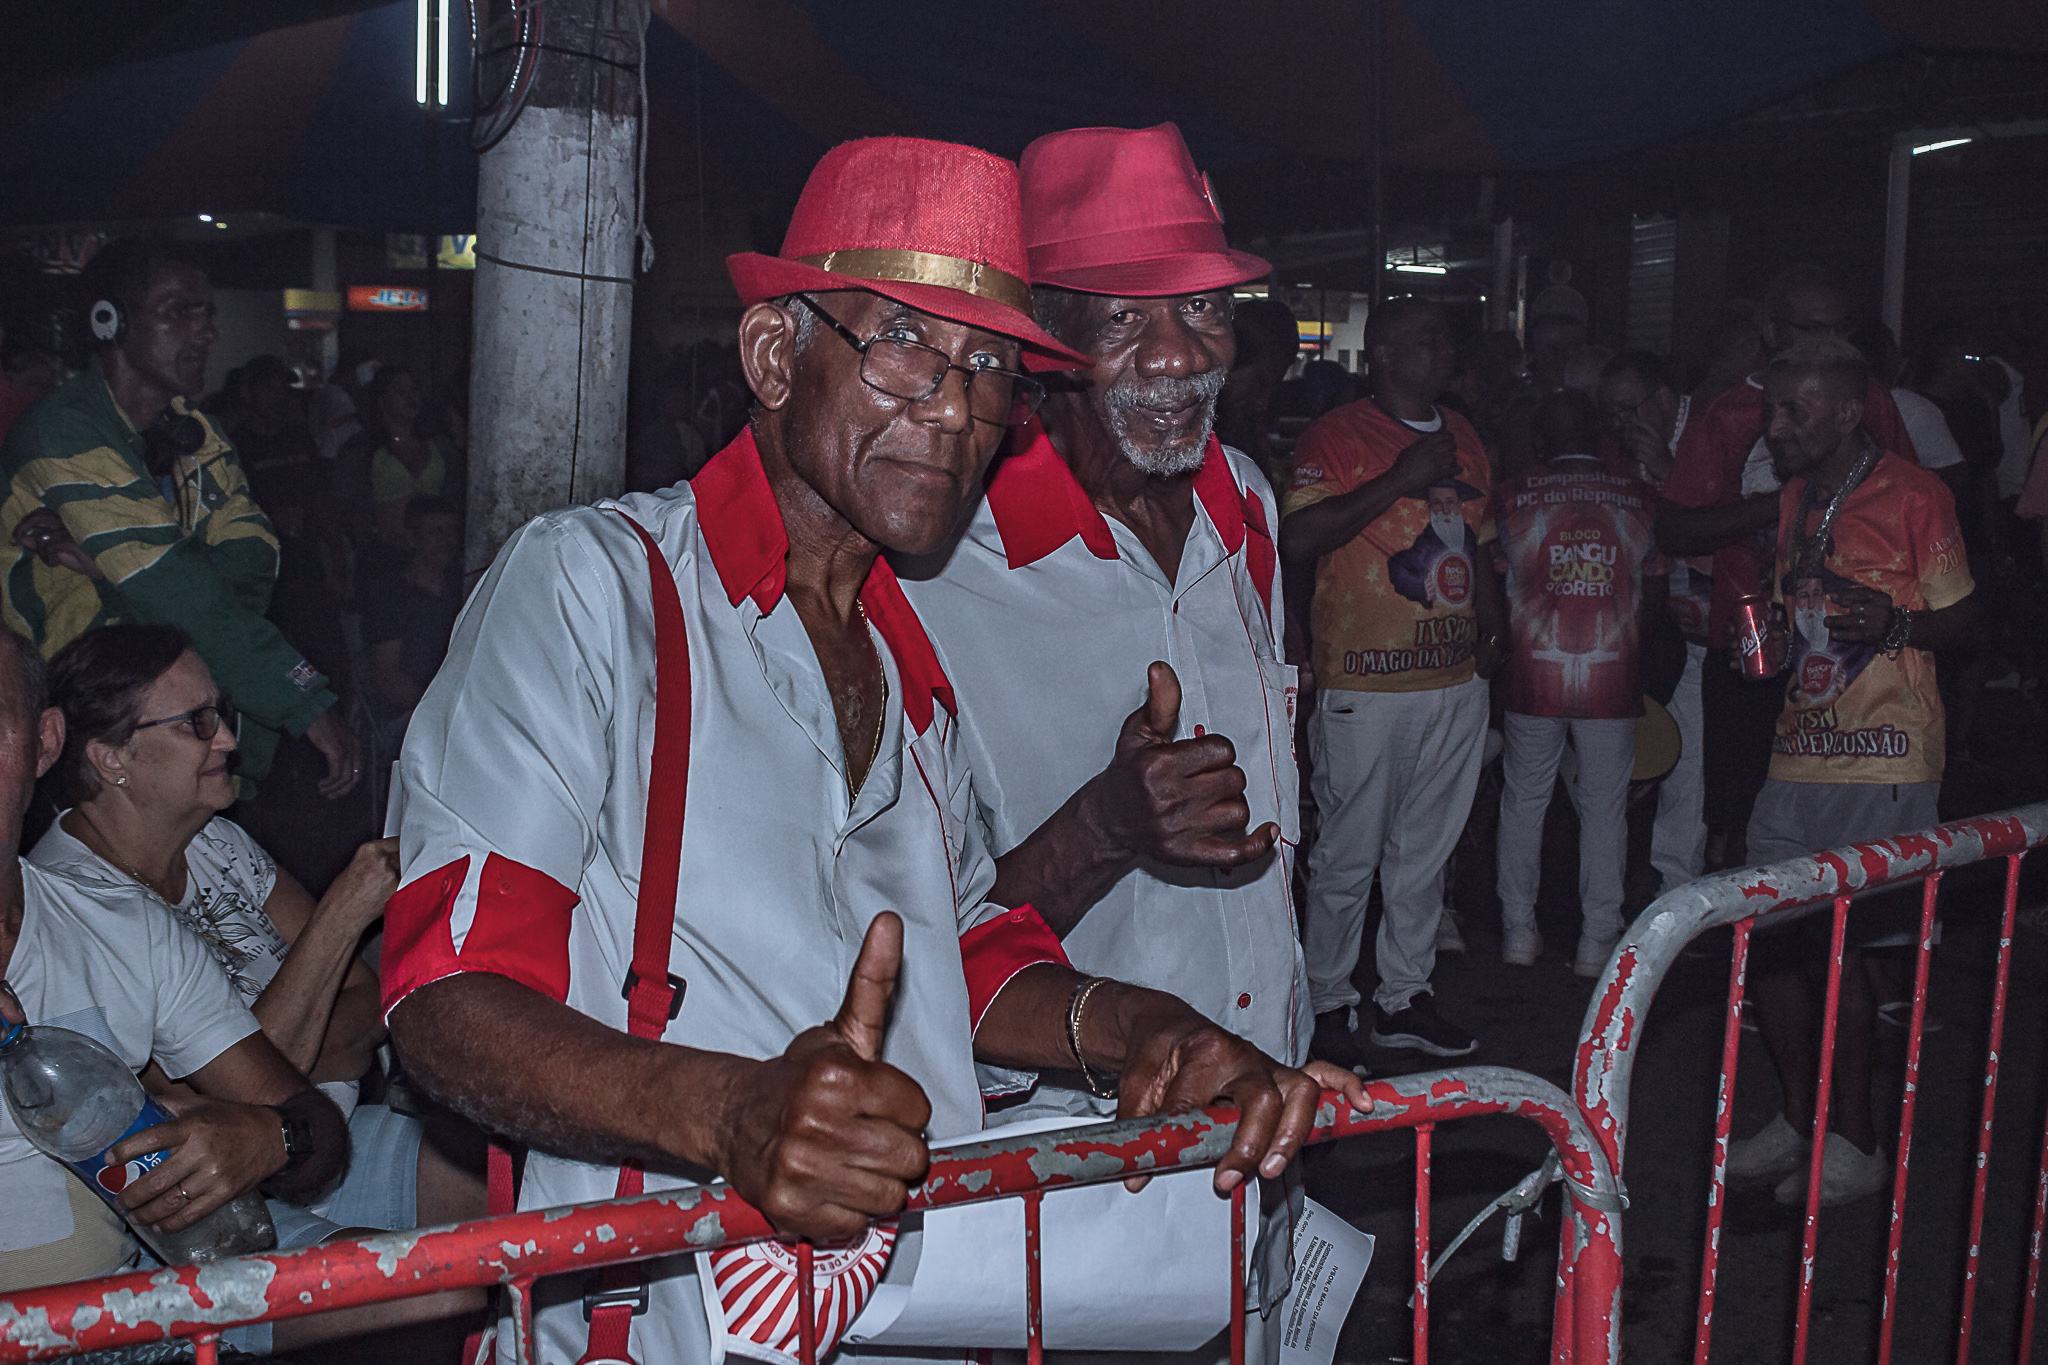 Memória Fotográfica: exposição resgata história de bairros periféricos do Rio de Janeiro